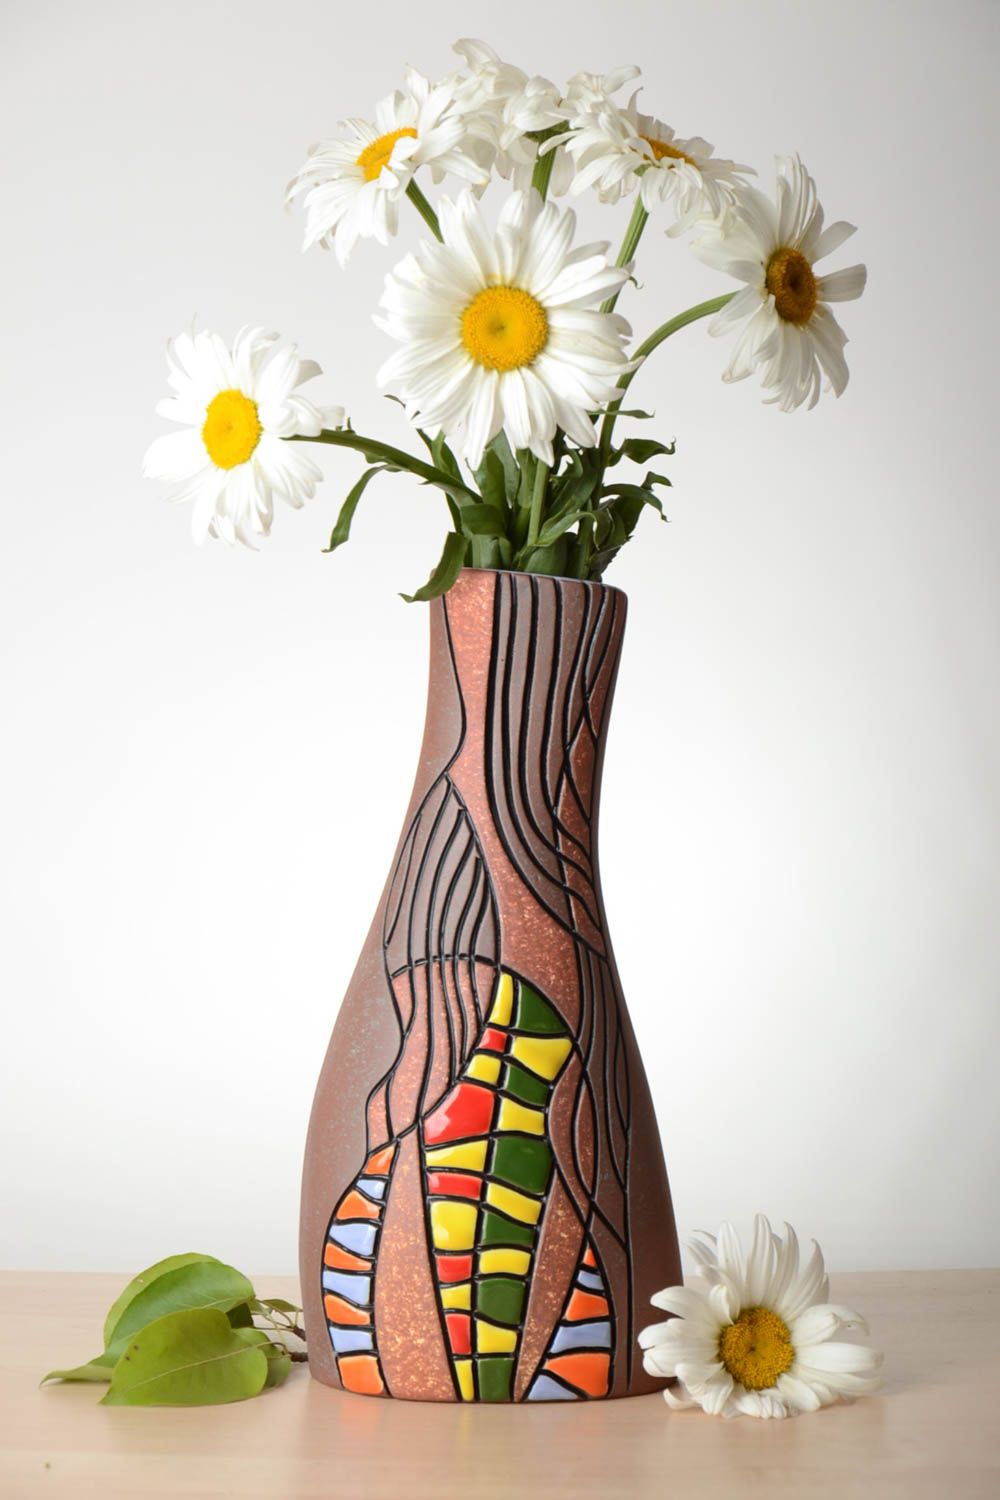 Сувенир ручной работы ваза для цветов эксклюзивный предмет интерьера фантастика фото 1